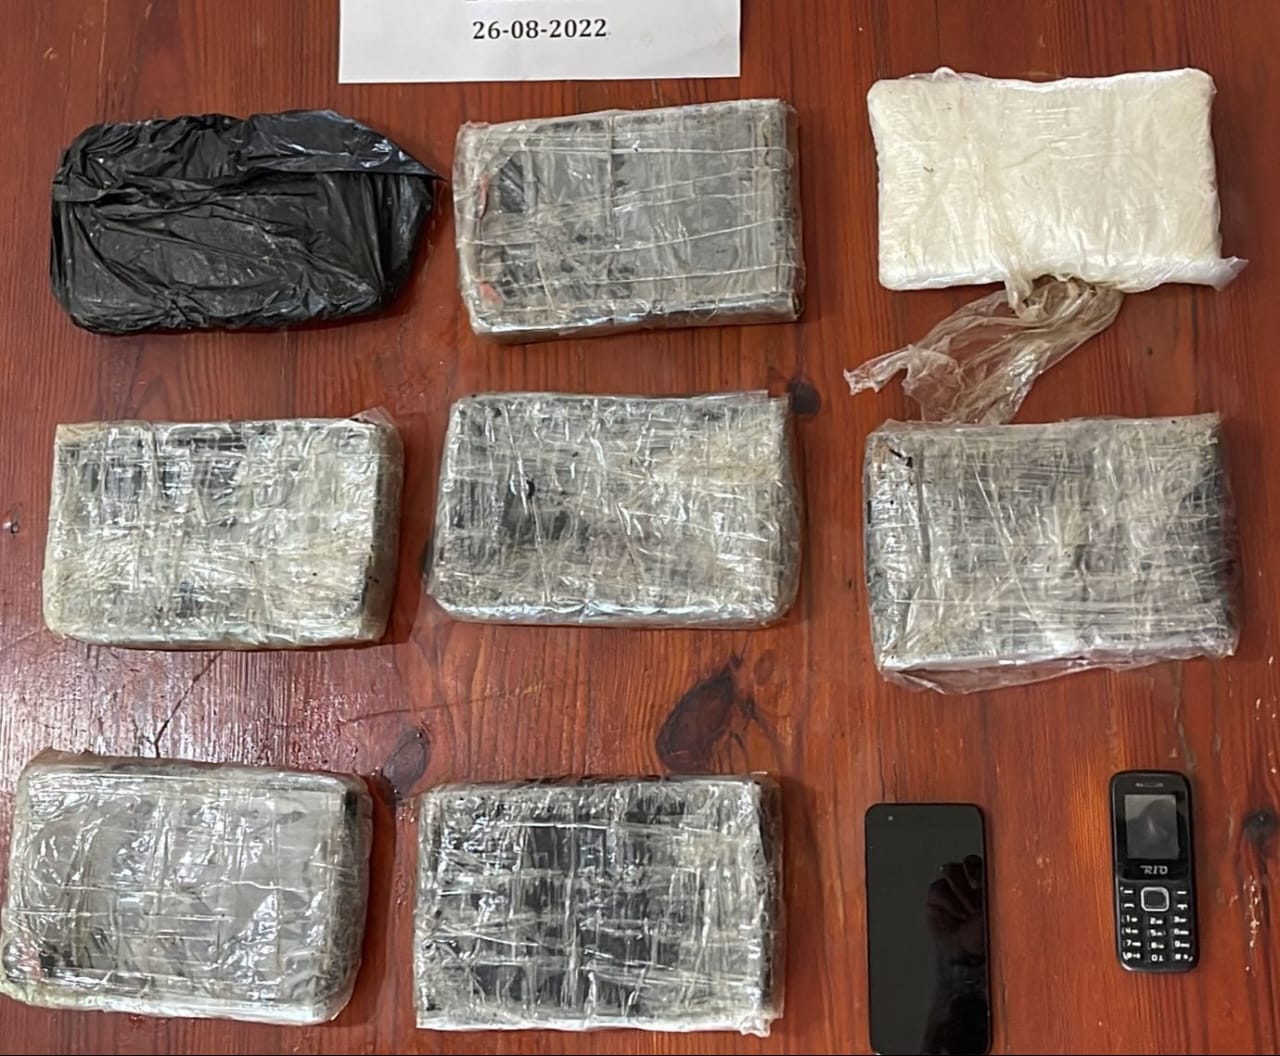 Ocupan 13 paquetes presumiblemente cocaína en operativos simultáneos